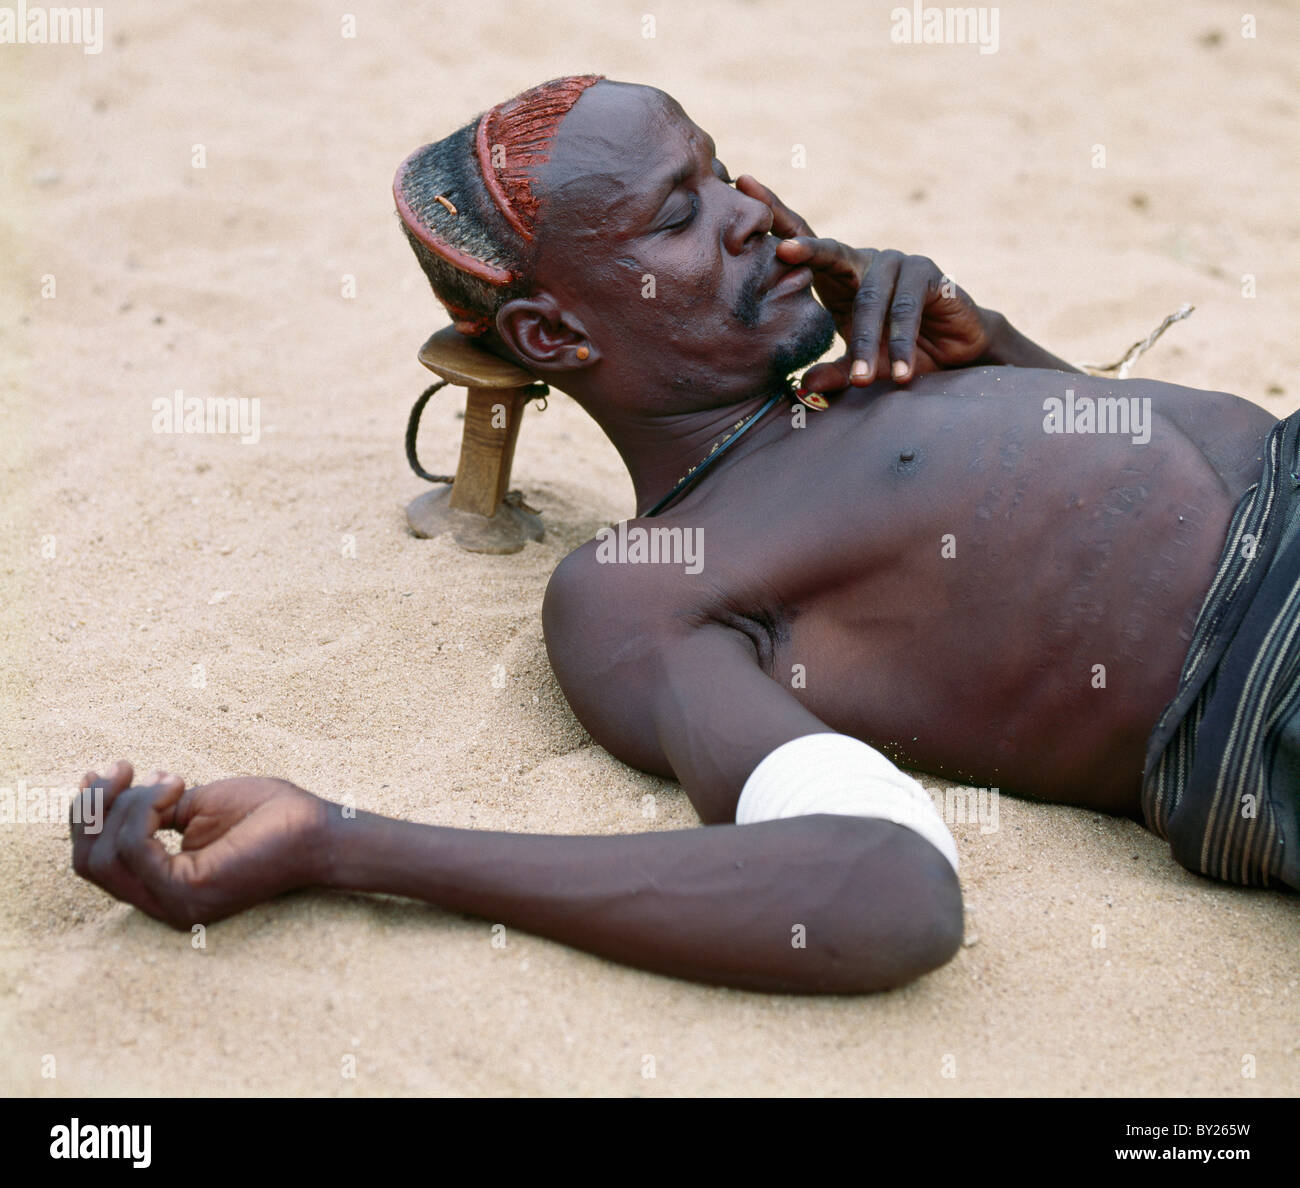 Ein Turkana-Mann nimmt ein Nickerchen mit seinem hölzernen Schemel als Kopfstütze, um seine aufwändige Frisur zu schützen. Turkana-Distrikt, Kenia Stockfoto